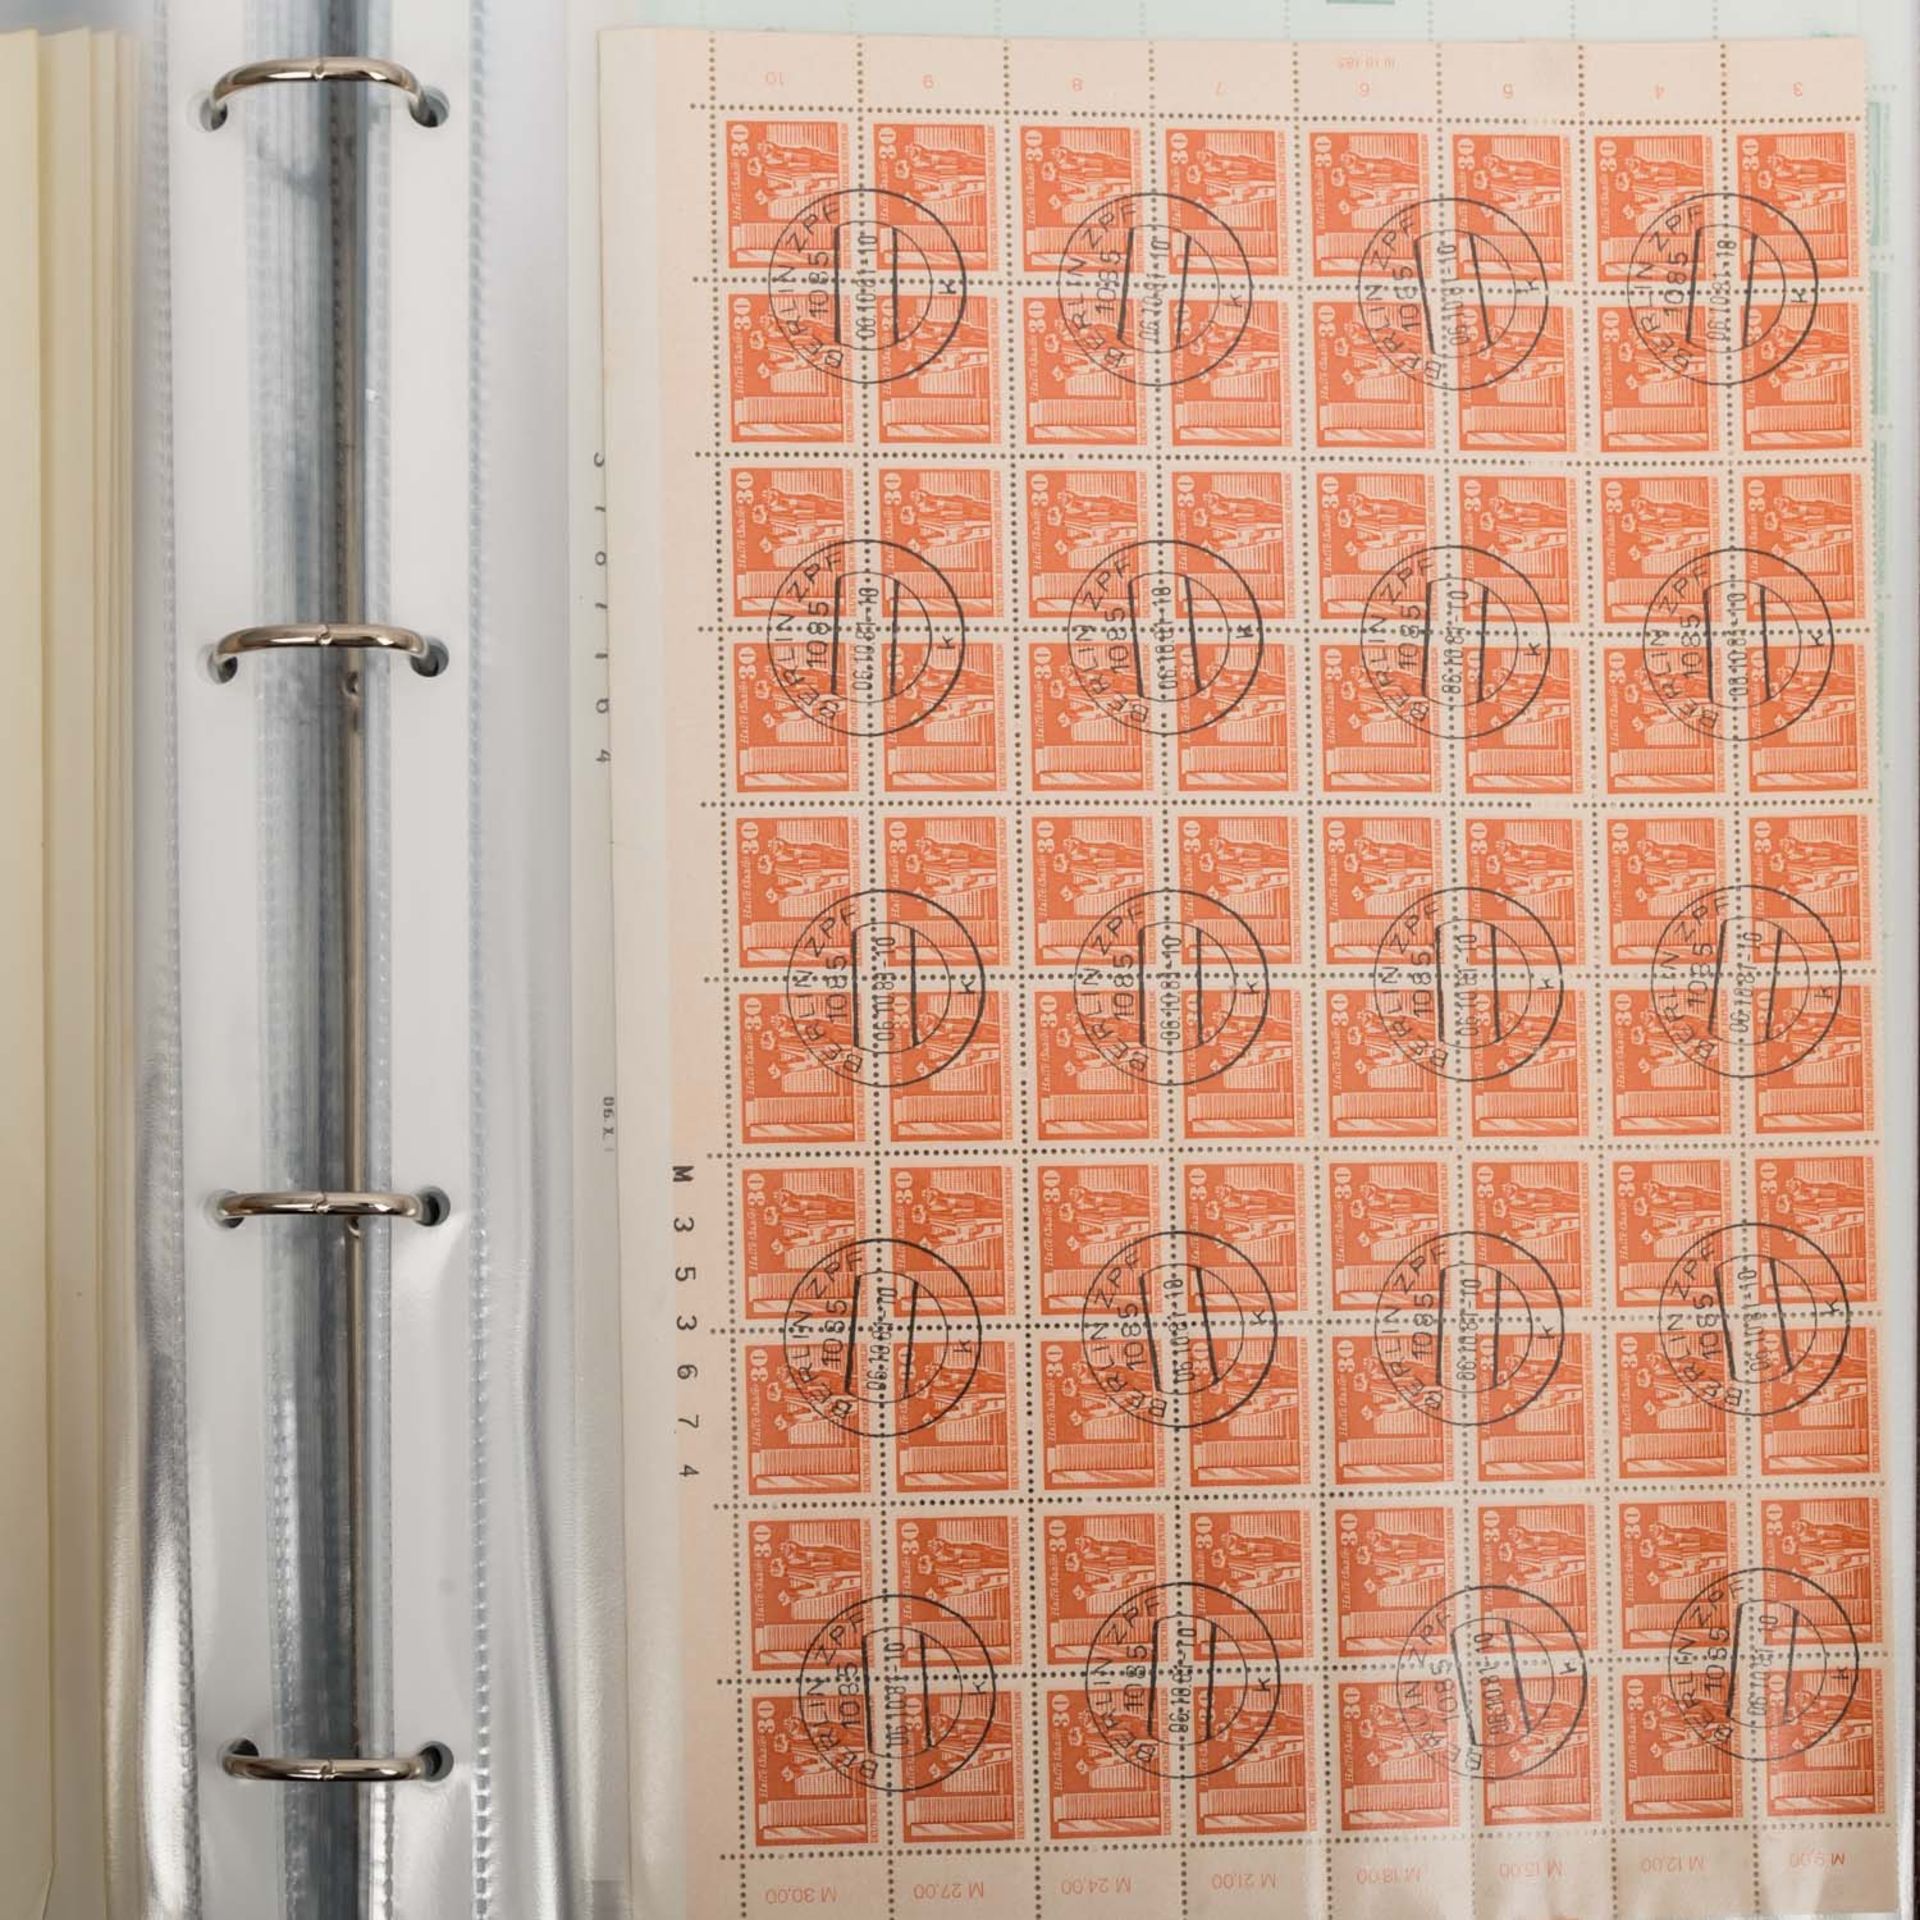 DDR, sehr spannendes Bogenkonvolut, ca. 90 Stück ex 1981/83,mit Angabe von Druckdaten, alle - Bild 3 aus 5